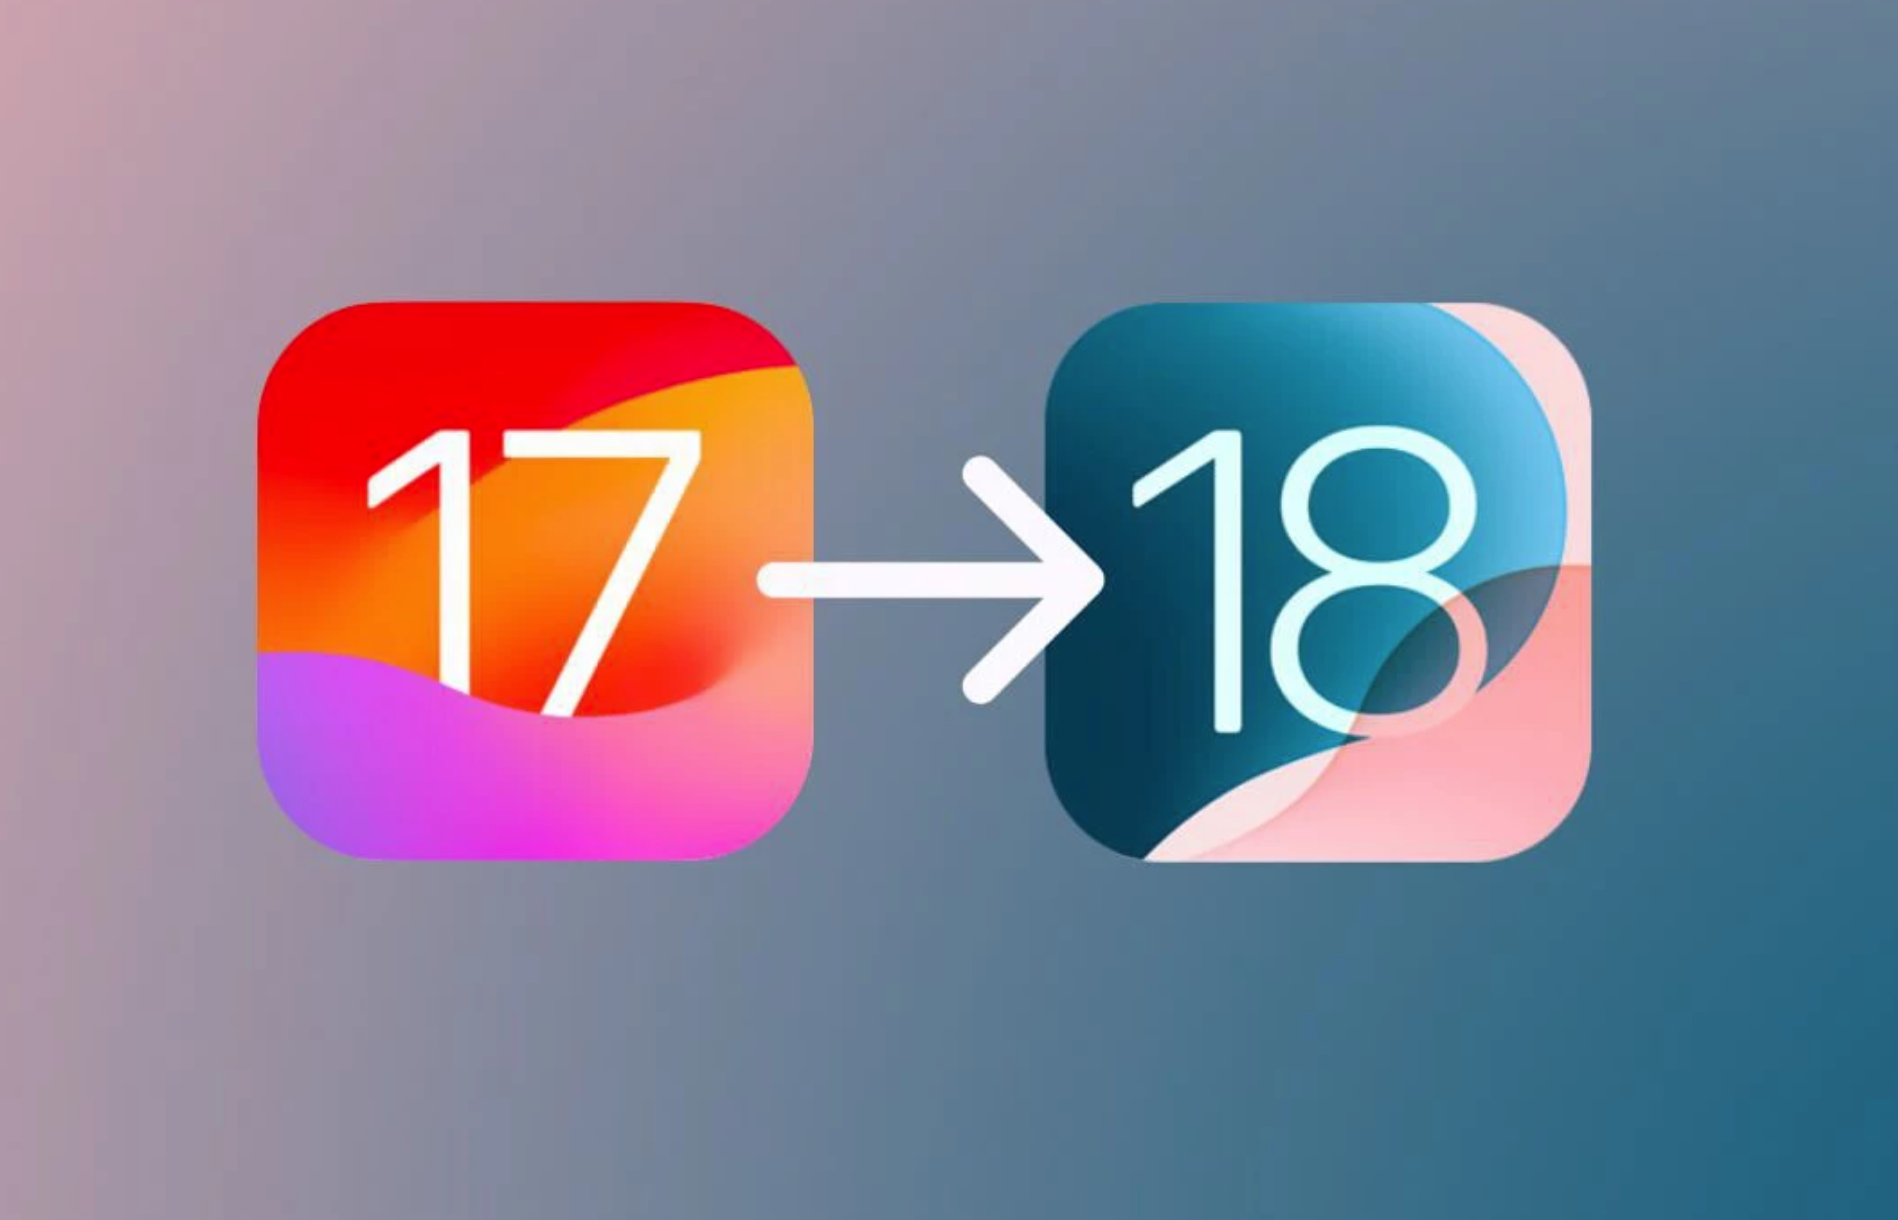 Diferencias que separan a iOS 17 de iOS 18 